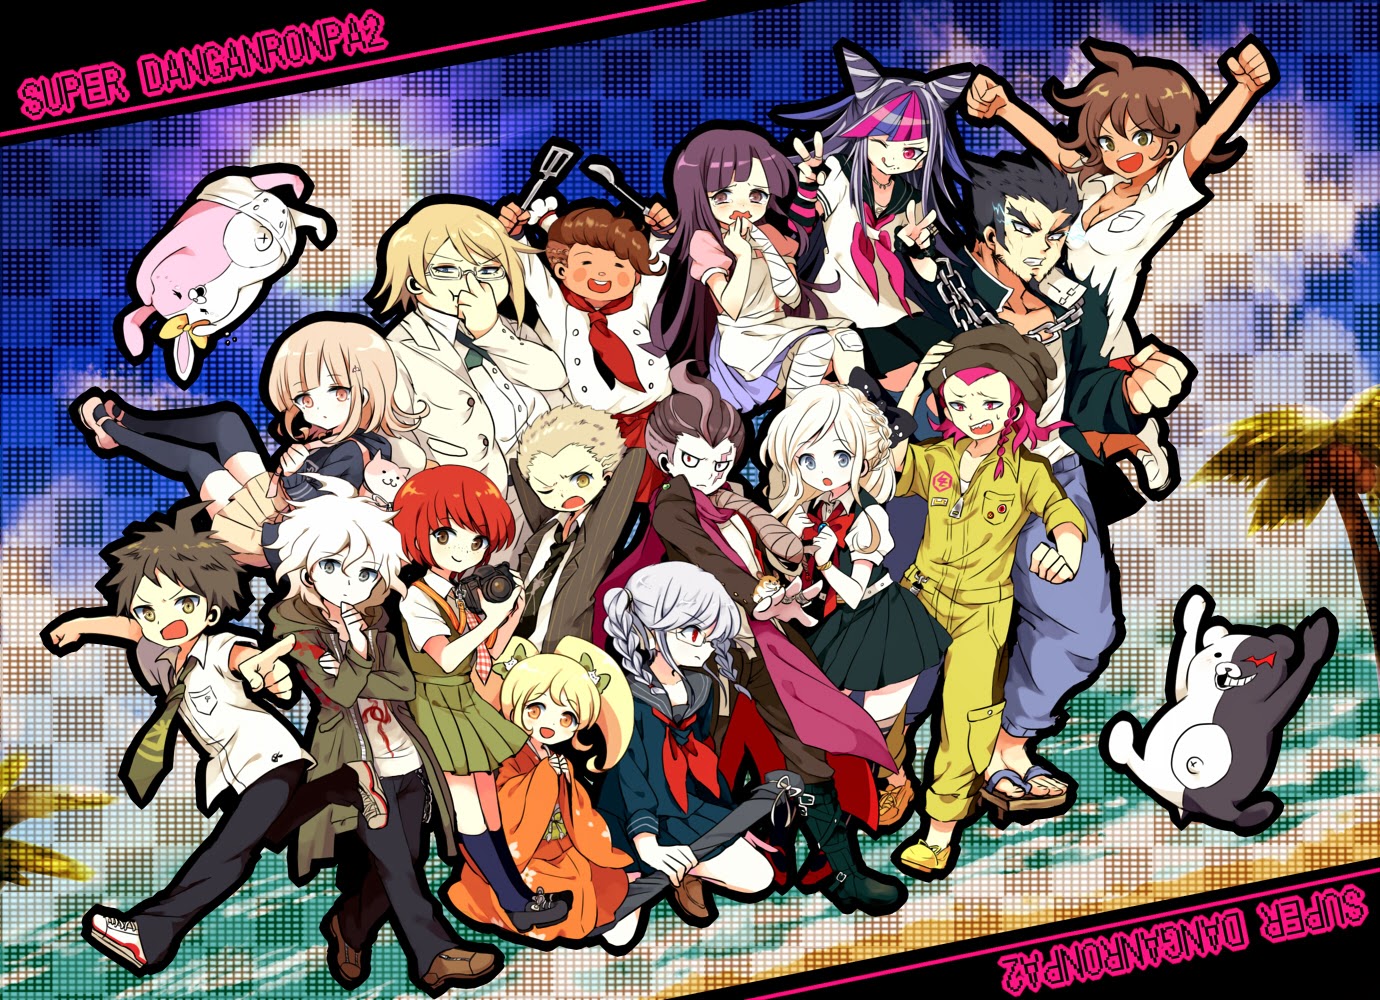 Os 20 Animes Mais Vistos na Temporada de Primavera 2014 Segundo a Sony!